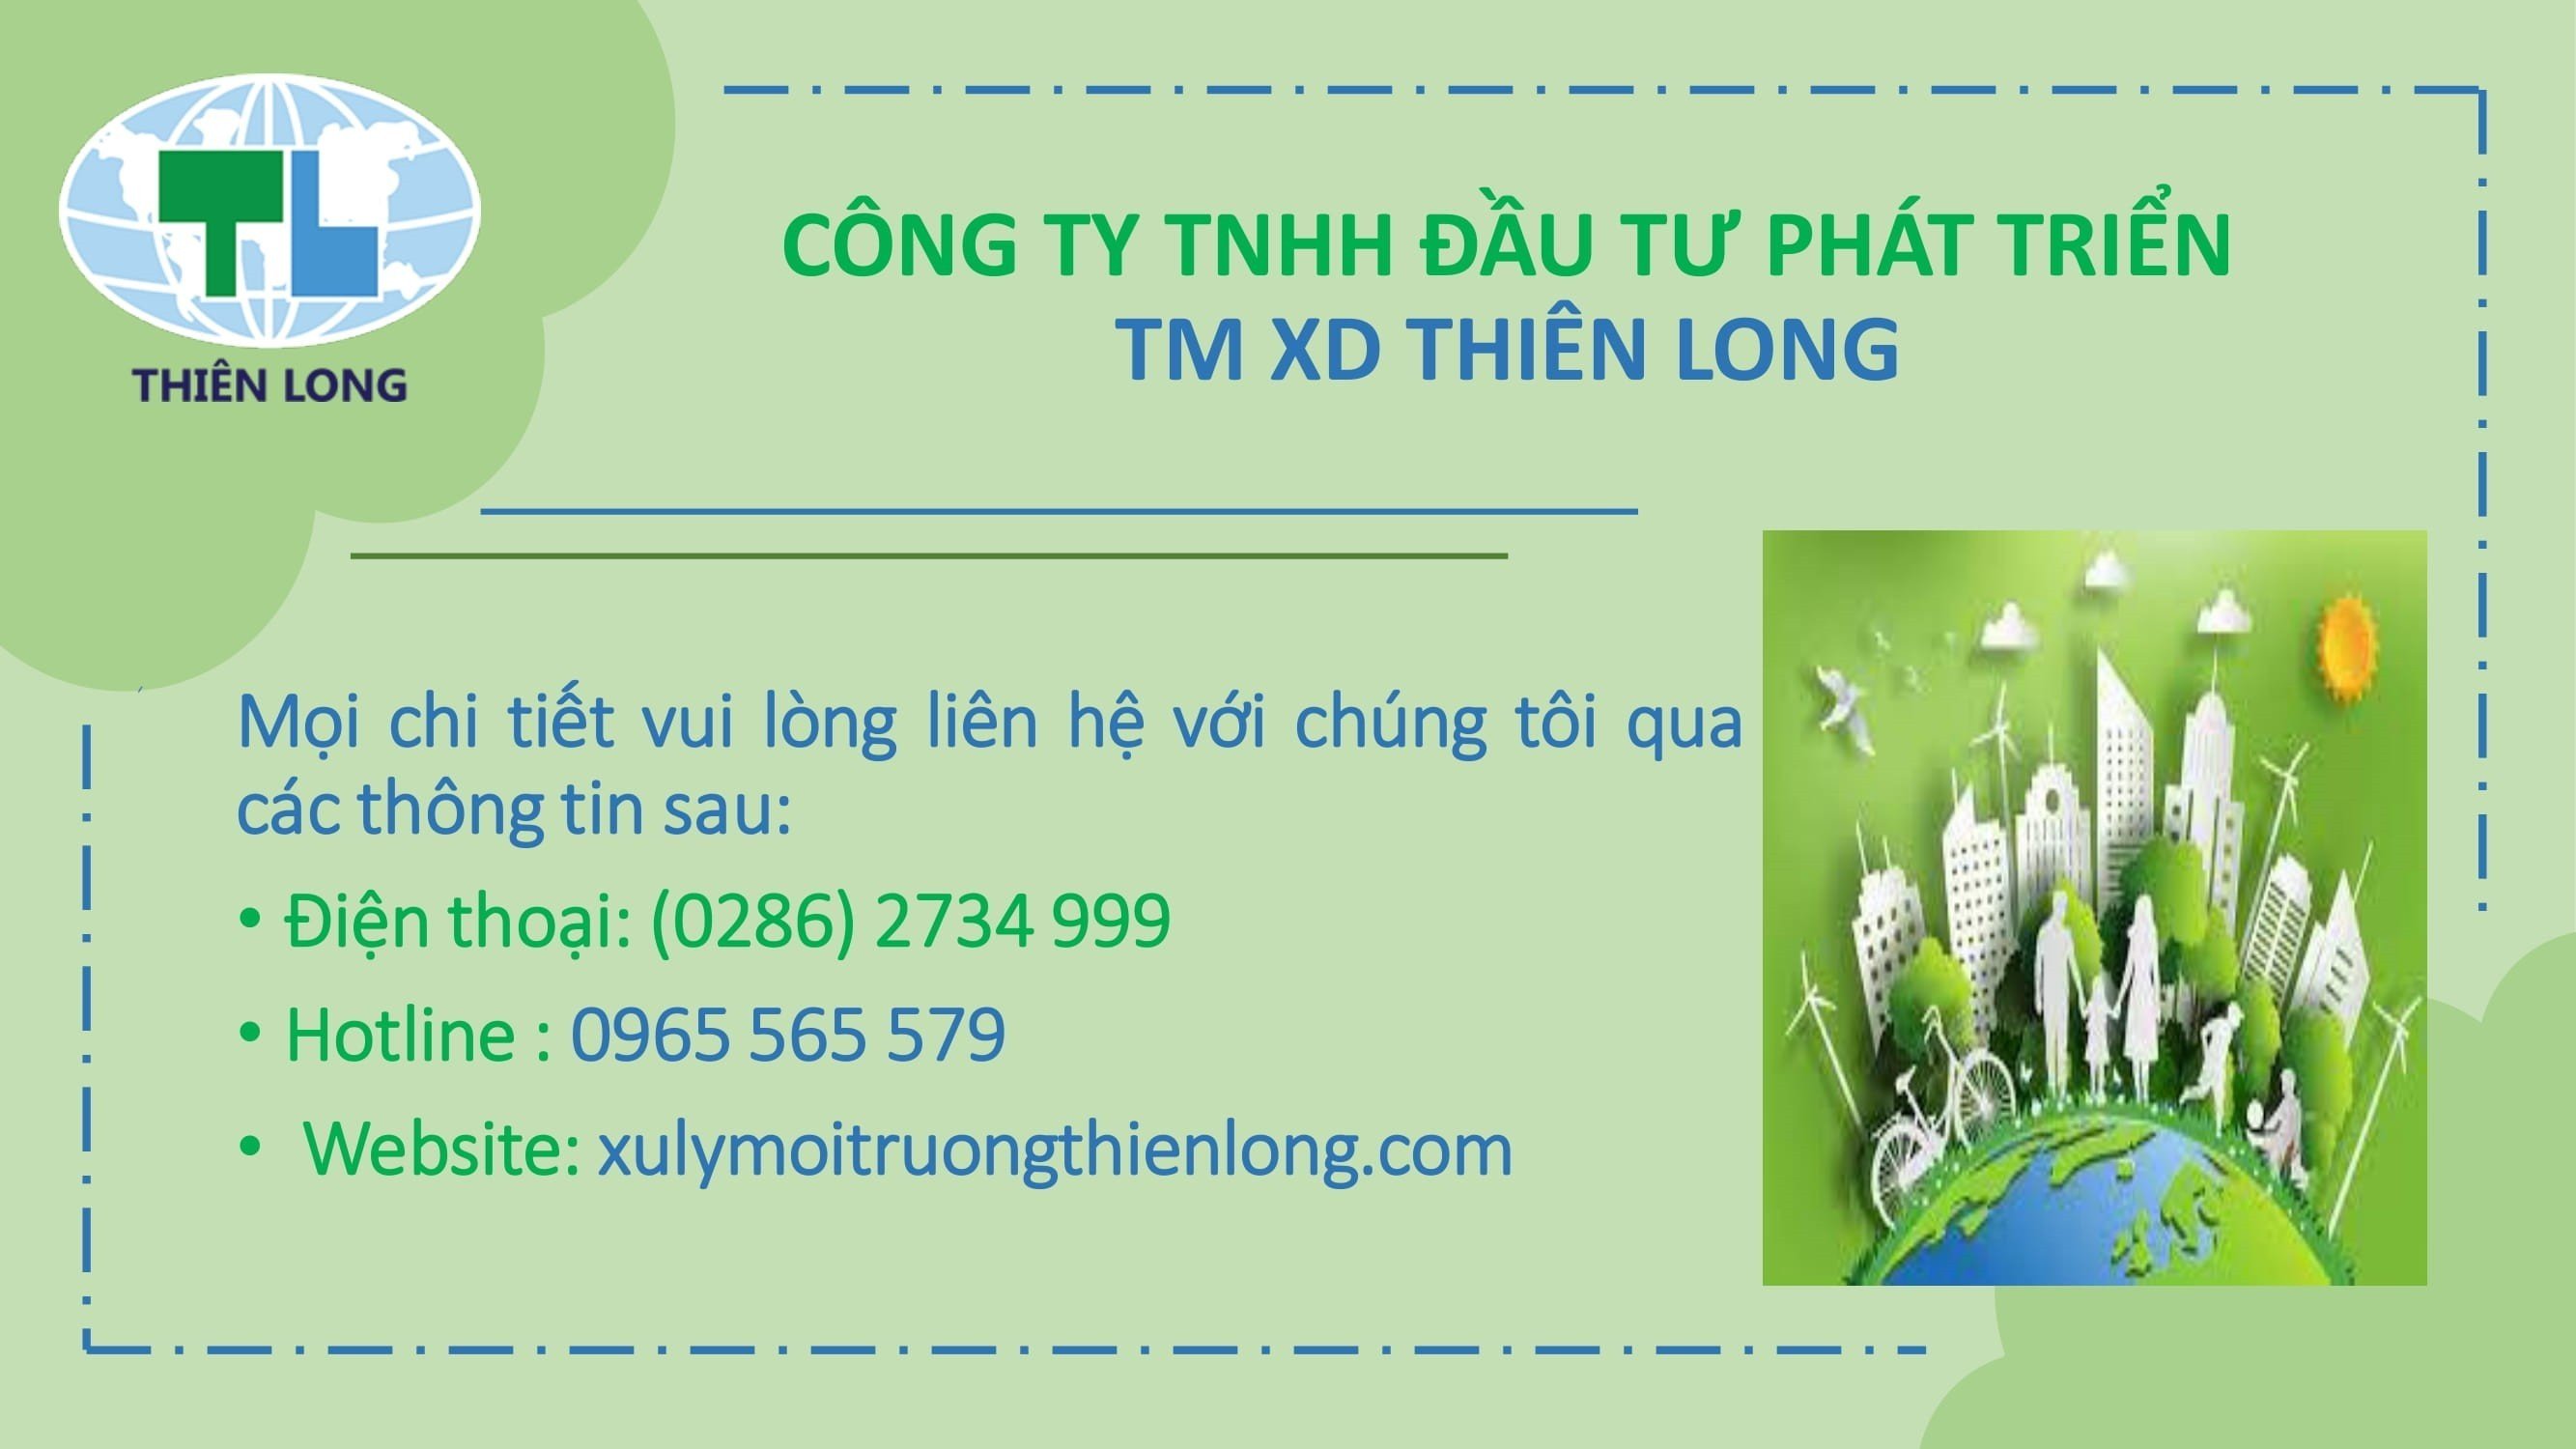 .Công ty TNHH đầu tư phát triển TM XD Thiên Long 